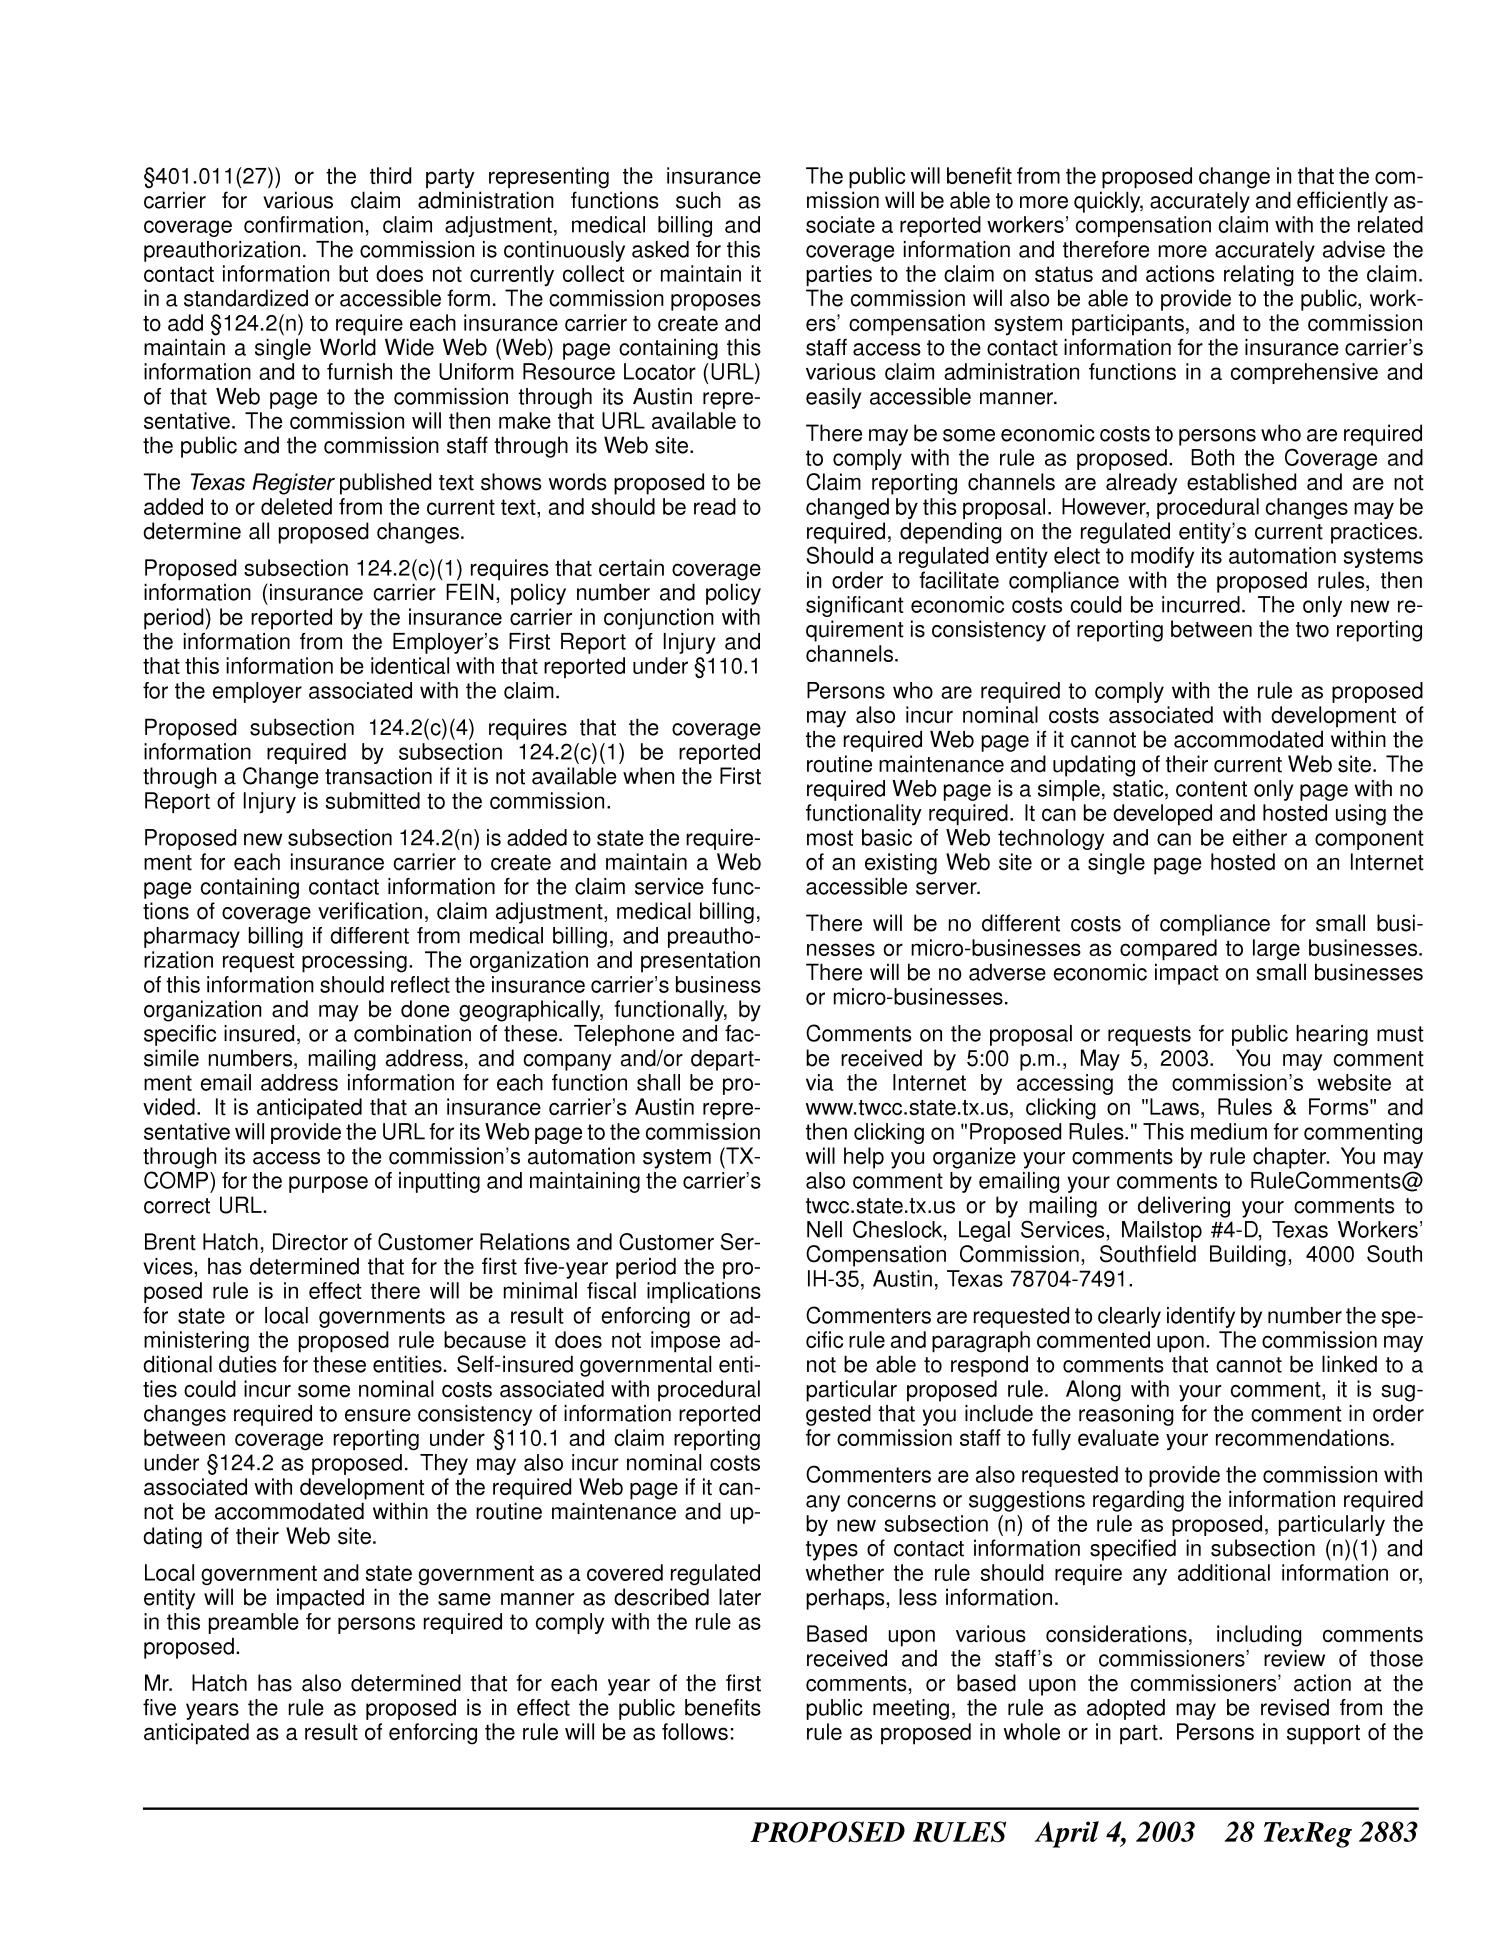 Texas Register, Volume 28, Number 14, Pages 2821-2988, April 4, 2003
                                                
                                                    2883
                                                